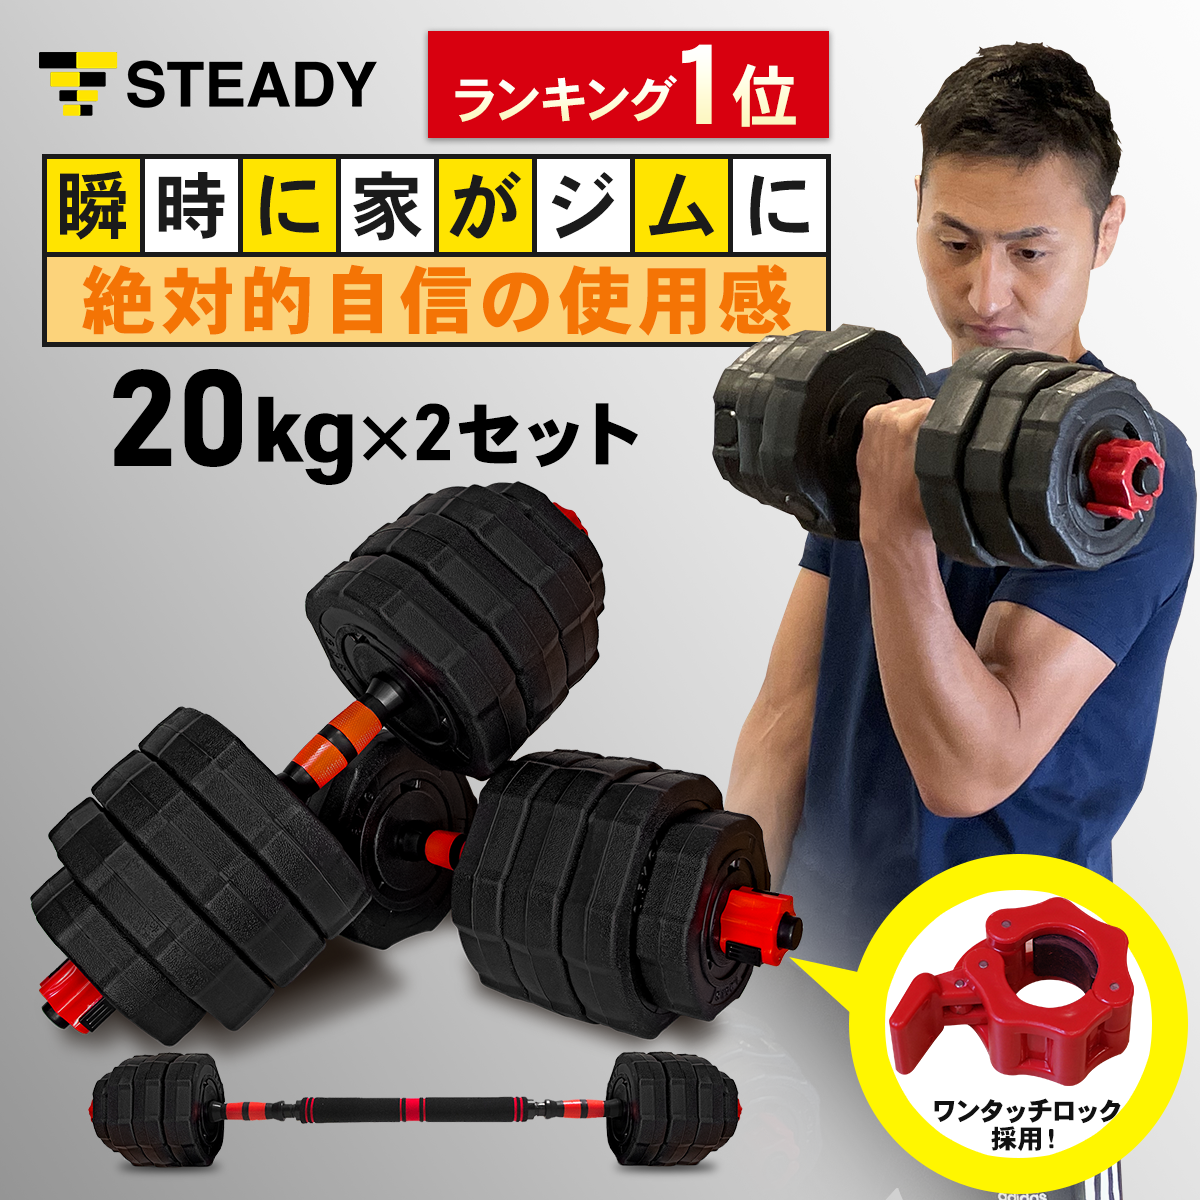 トレーニング/エクササイズ【送料込特価】20kg 2個セット バーベルにもなるダンベル (40kg)